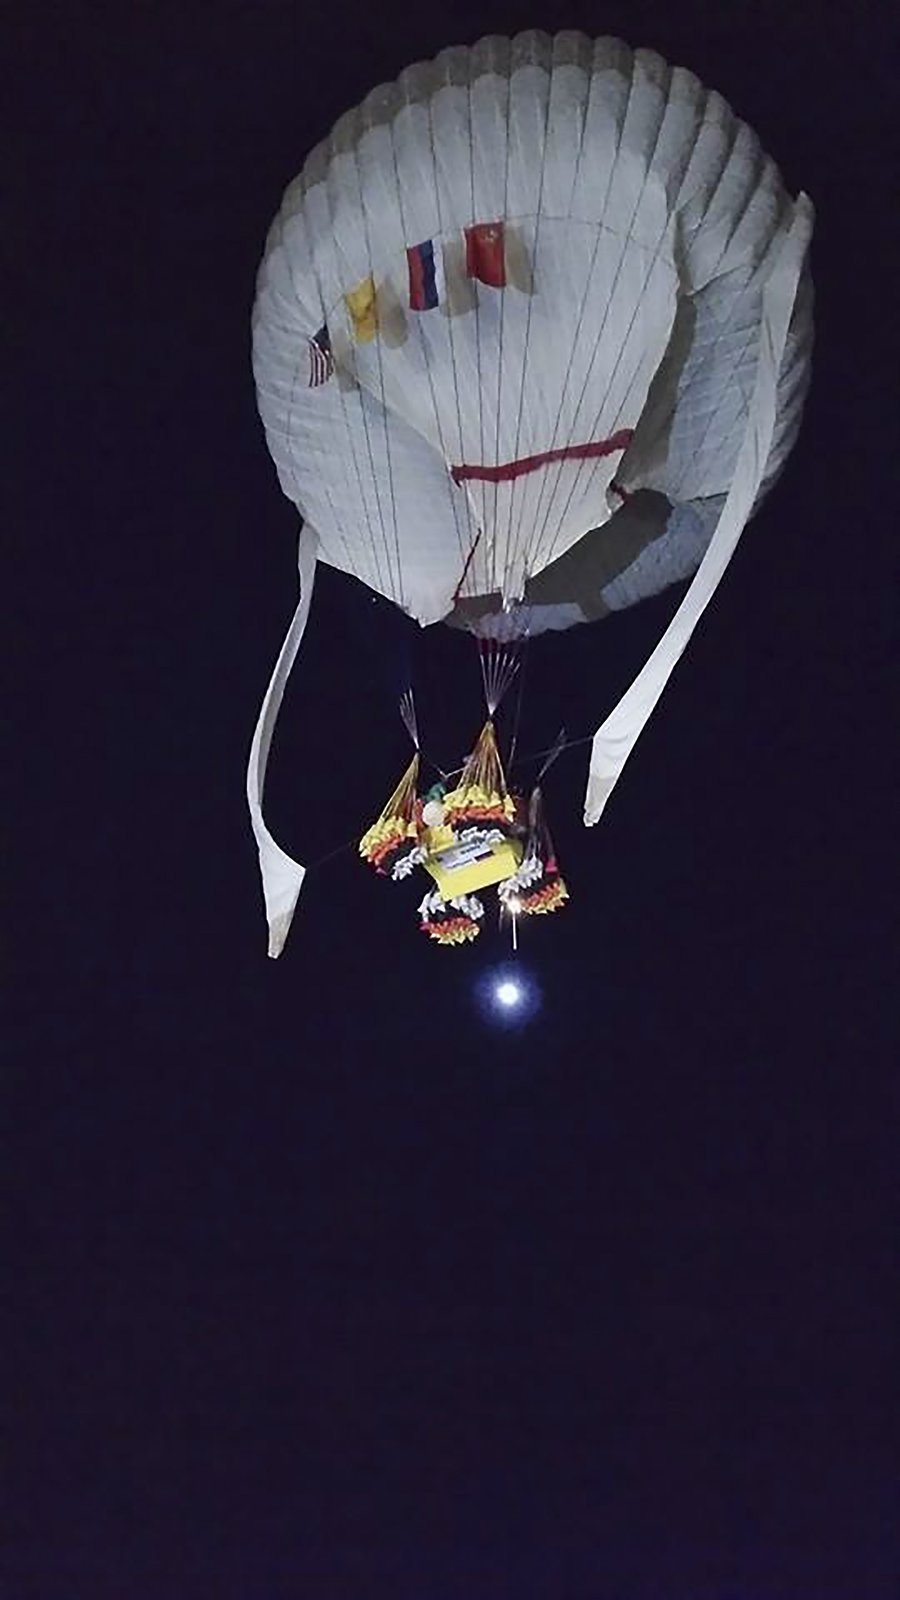 Bláznivý, ale odvážný kousek balónových letců: Cestovali z Japonska do Ameriky